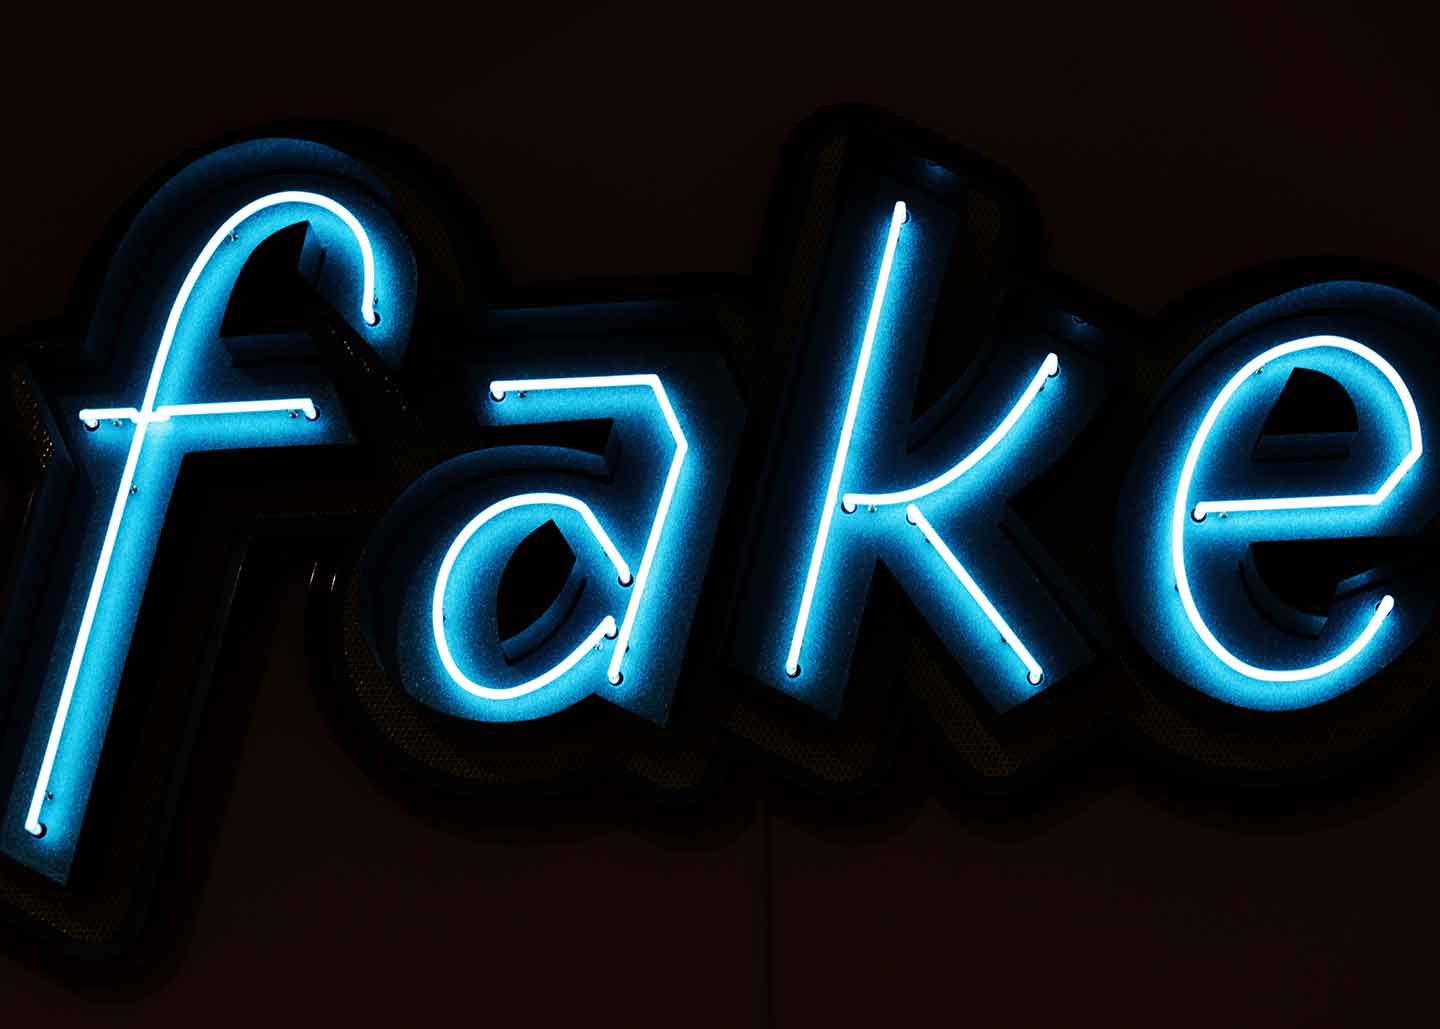 leuchtschrift mit dem Text "fake"